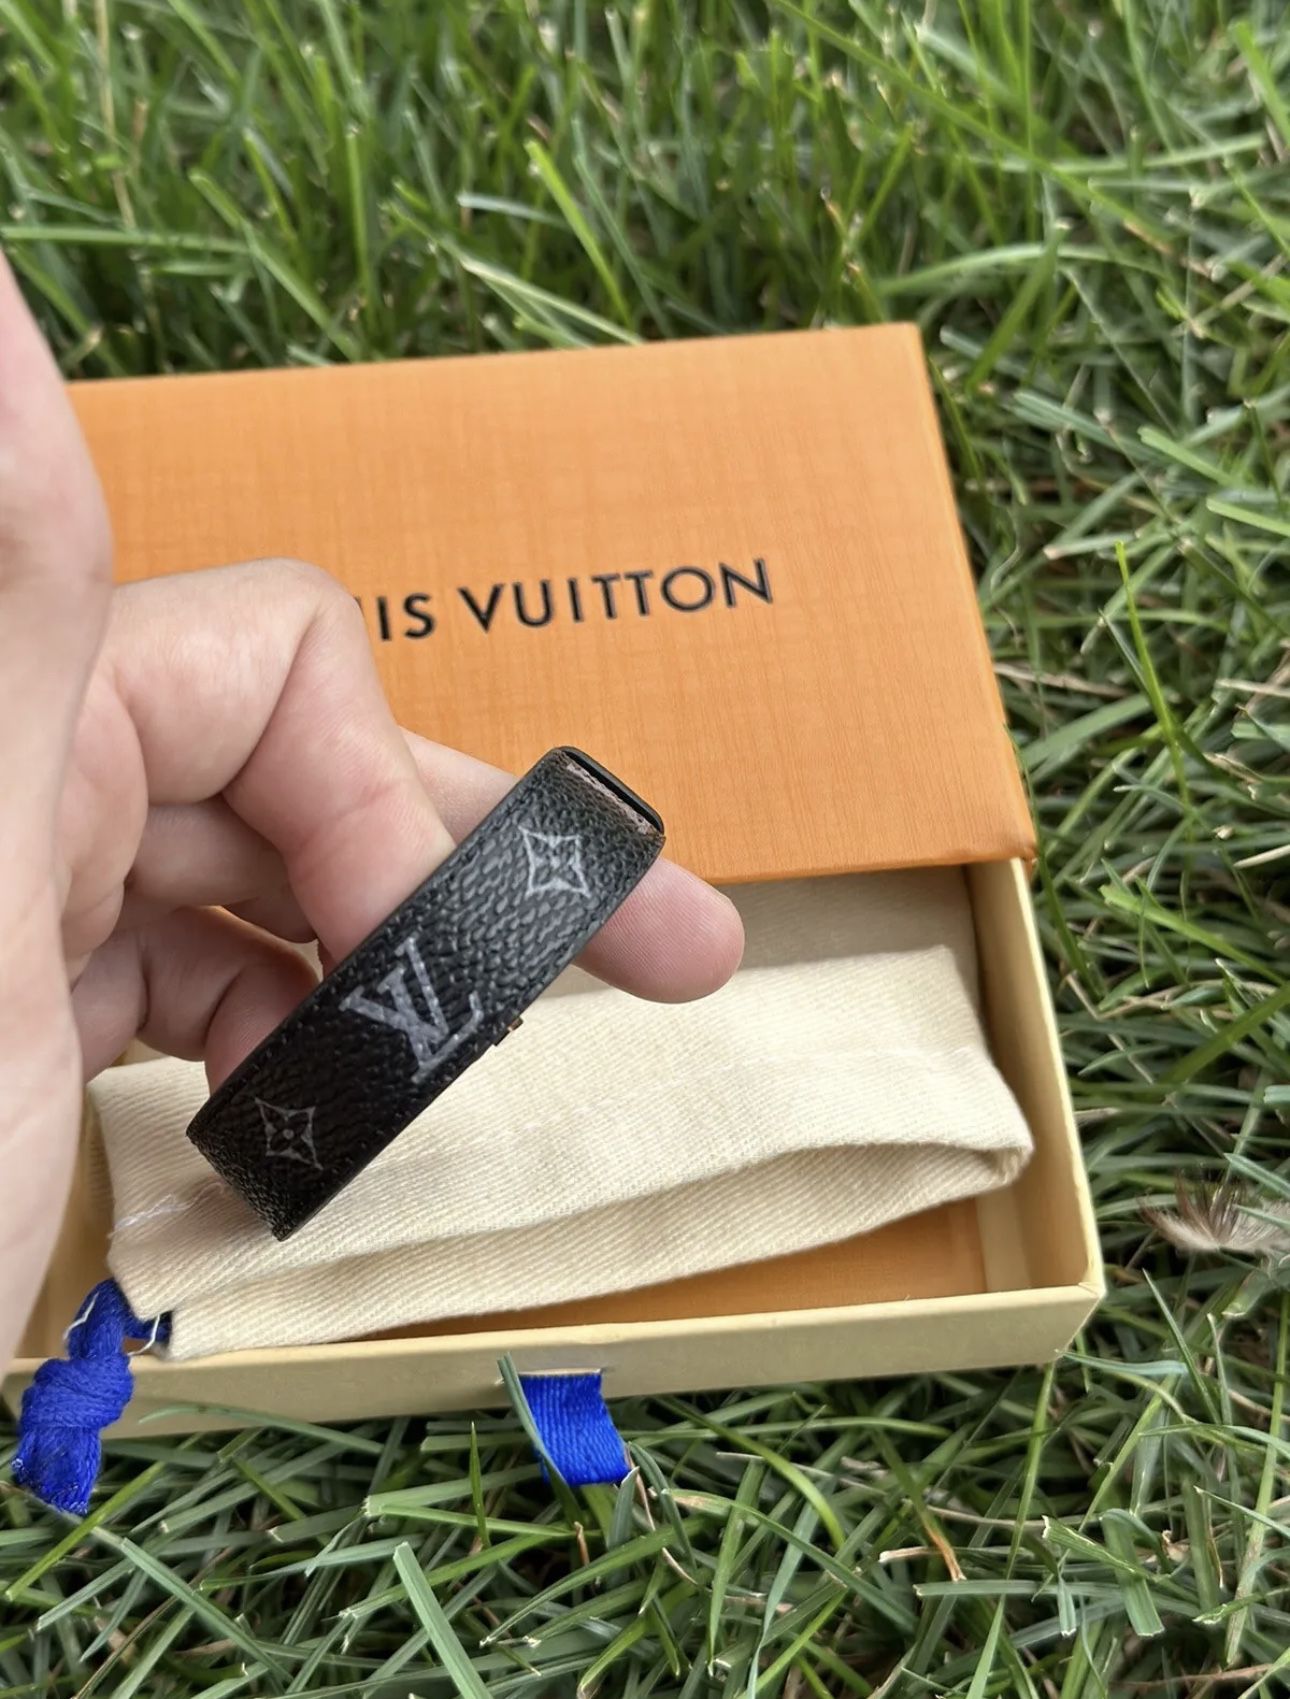 Louis Vuitton Nano Bracelet for Sale in Auburn, WA - OfferUp